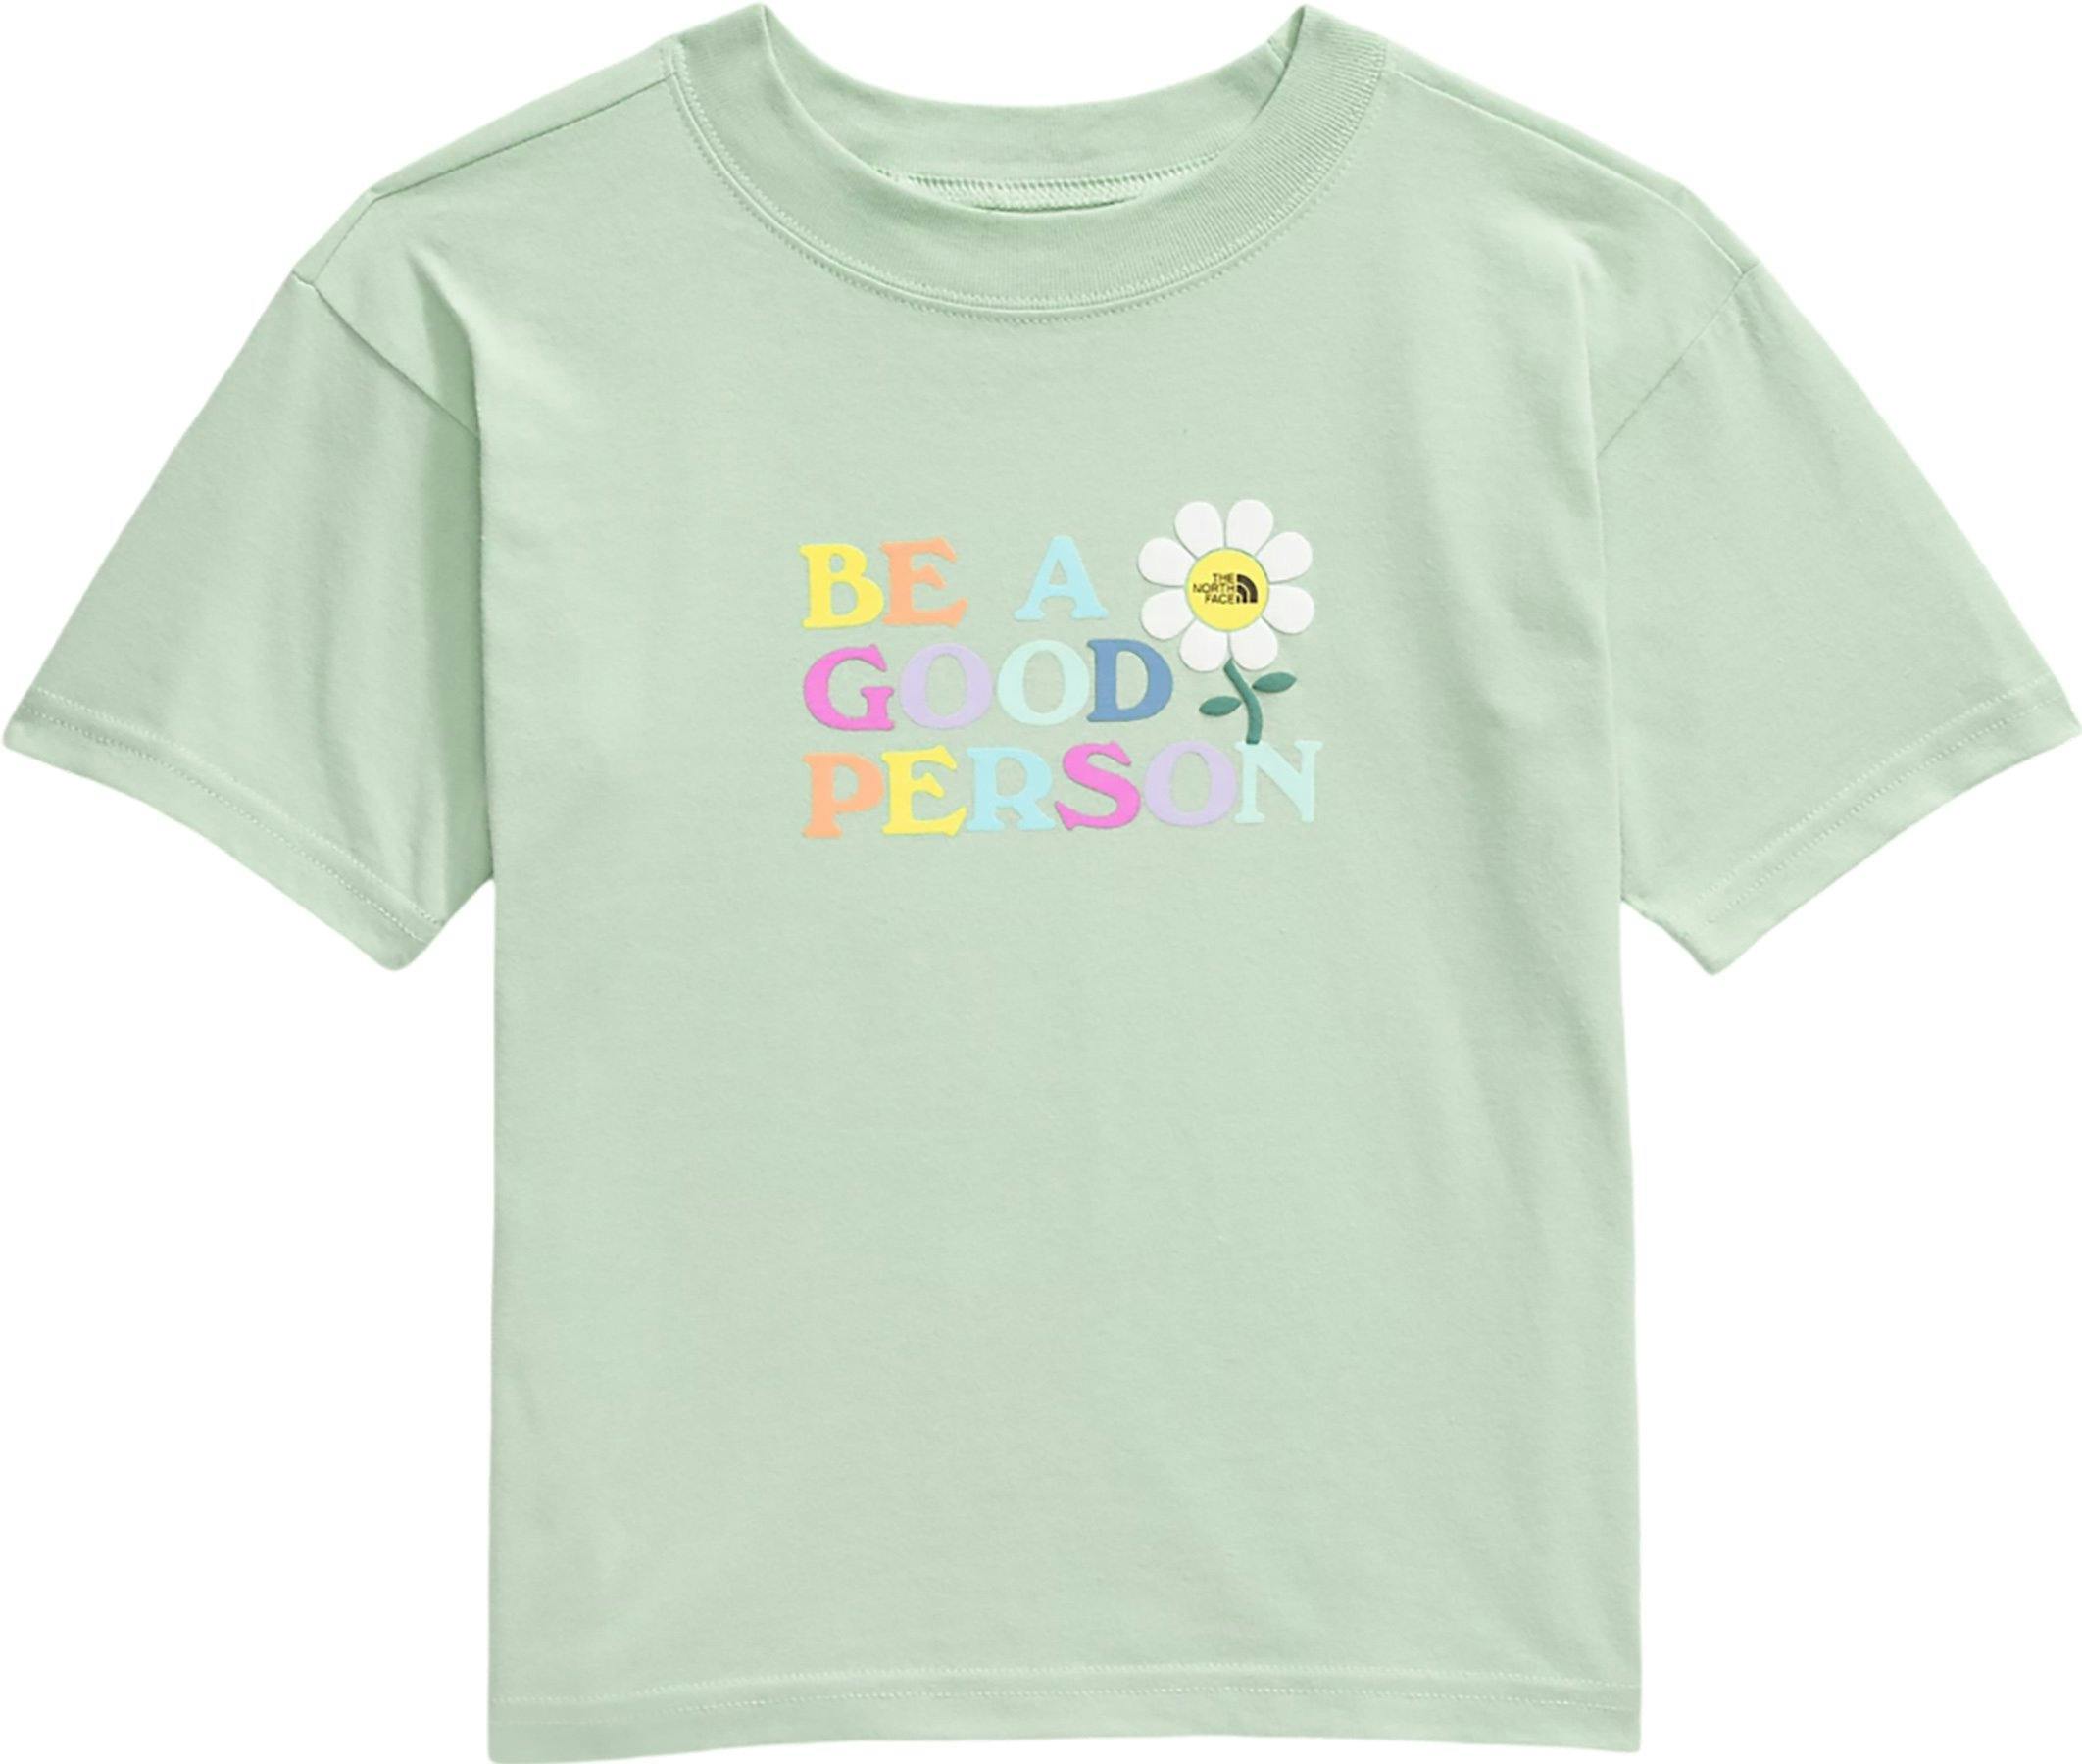 Image de produit pour T-shirt graphique à manches courtes - Enfant